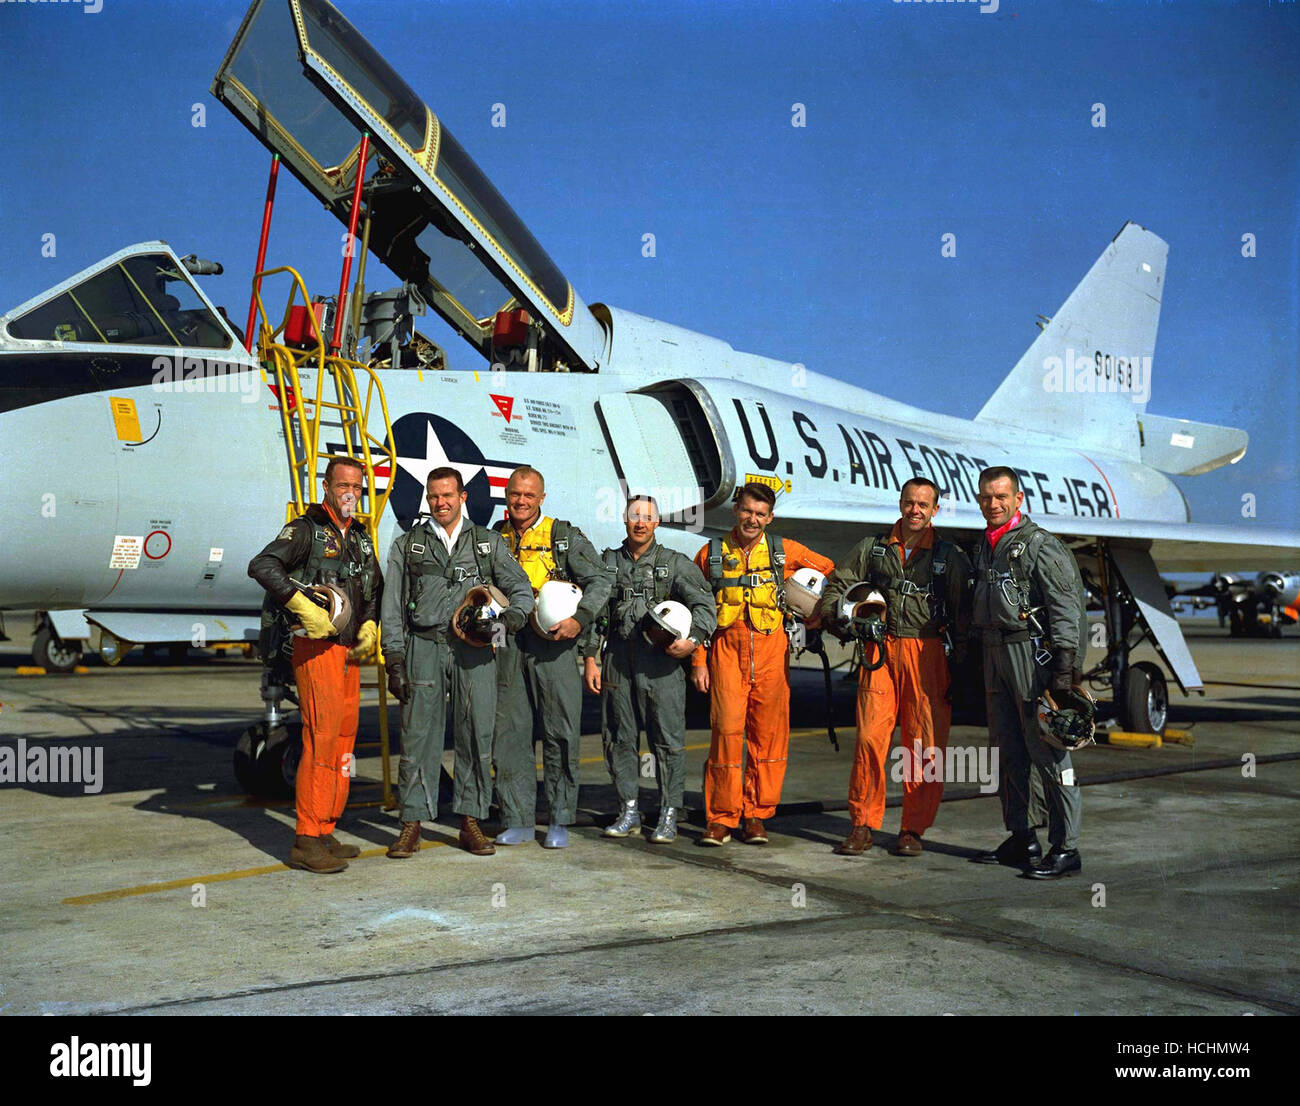 Foto von der Mercury-Astronauten stehen neben einer Convair 106 B Flugzeug, aufgenommen am 20. Januar 1961. Sie sind von links nach rechts, M. Scott Carpenter, L. Gordon Cooper Jr., John H. Glenn Jr., Virgil I. Grissom, Walter M. Schirra Jr., Alan B. Shepard Jr. und Donald K. Slayton. Credit: NASA über CNP /MediaPunch Stockfoto